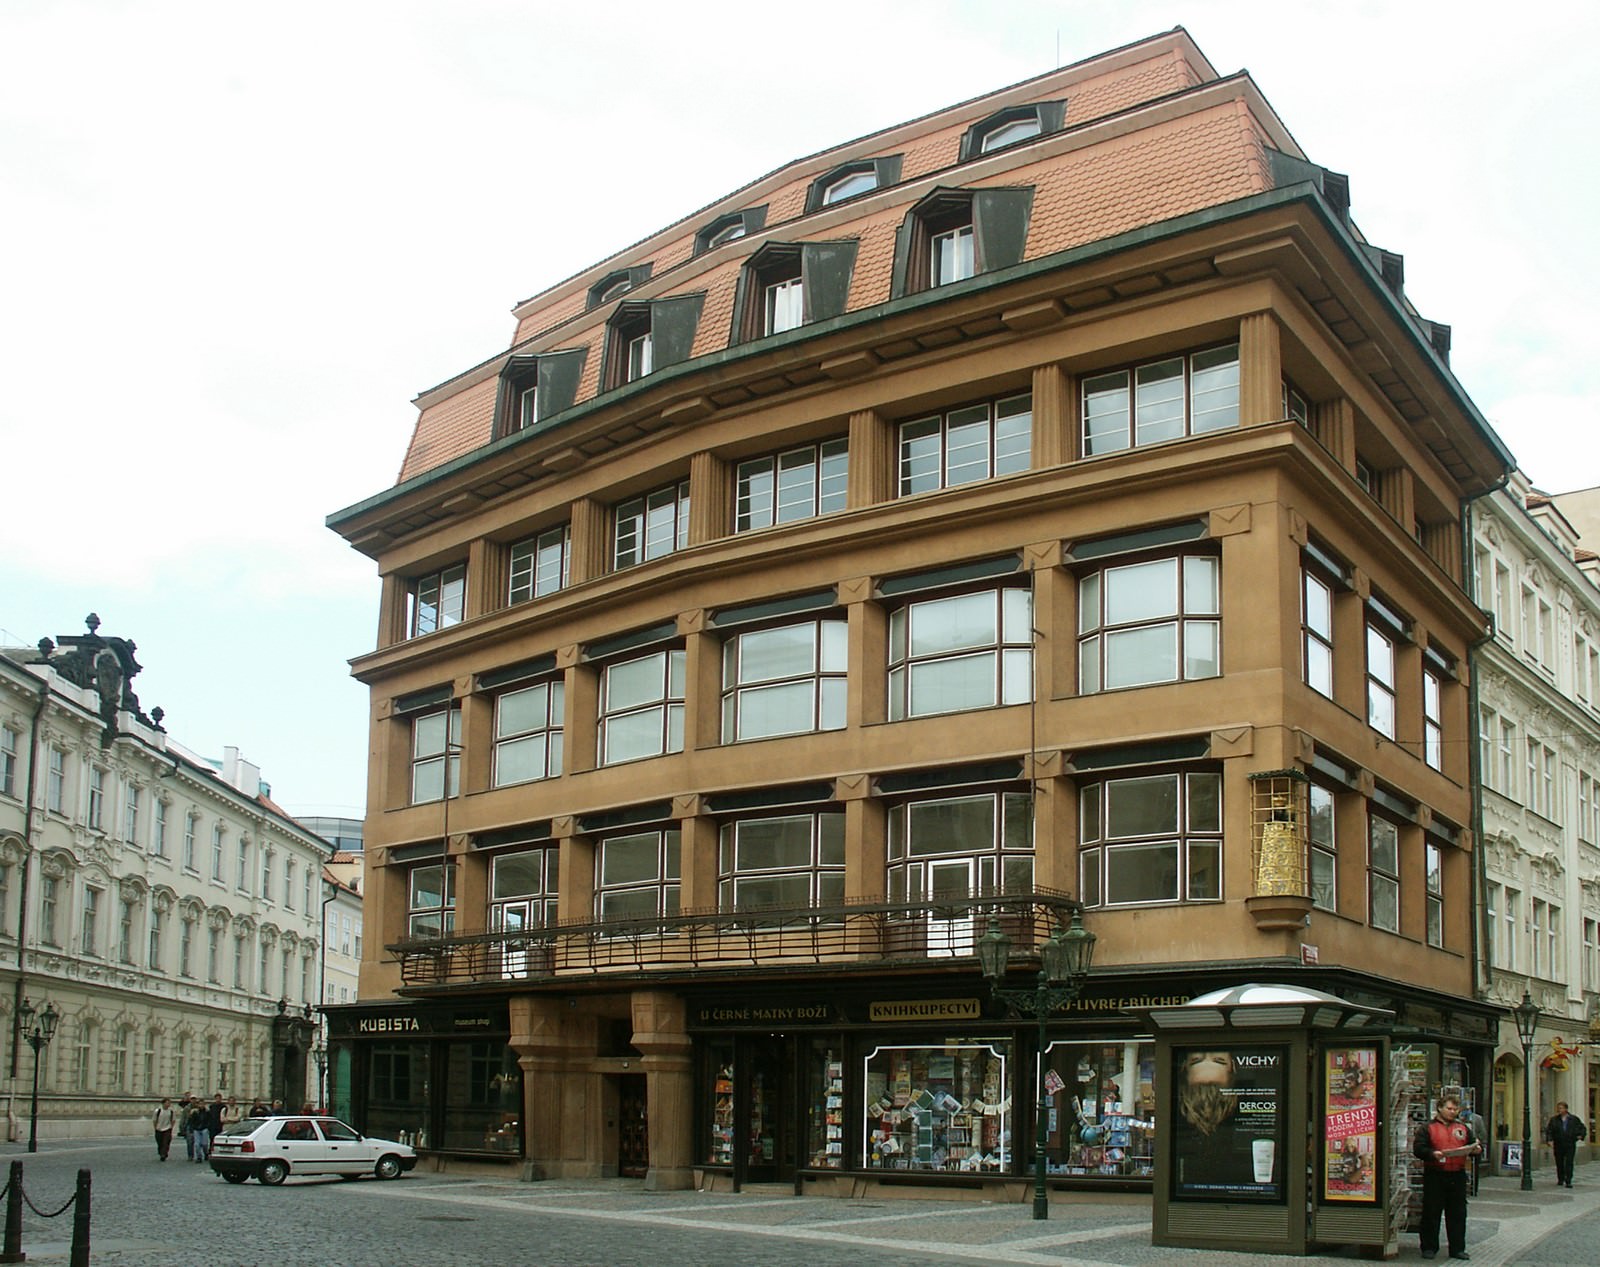 Feige. 1 - Haus der Schwarzen Madonna, Museum der dekorativen Künste. Prague.eu: Die offizielle Tourismus-Website für Prag. Fotos: Ondrej Kocourek.